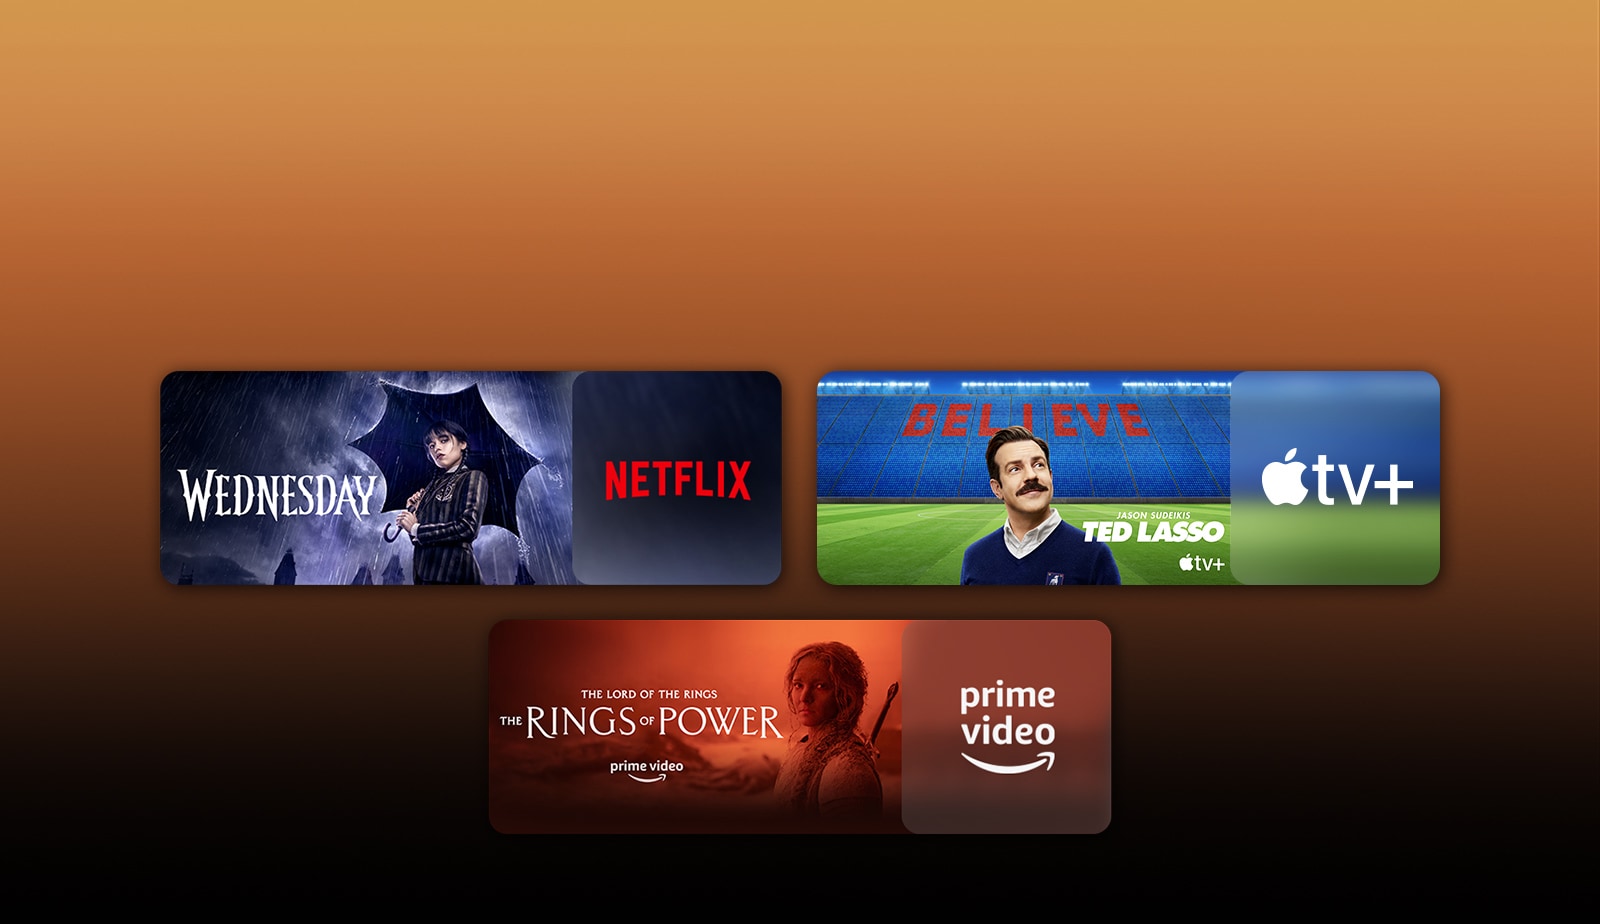 Λογότυπα των πλατφορμών υπηρεσιών streaming και αντίστοιχο υλικό ακριβώς δίπλα σε κάθε λογότυπο. Εμφανίζονται εικόνες των σειρών Wednesday του Netflix, TED LASSO του Apple TV και The rings of power του PRIME VIDEO.